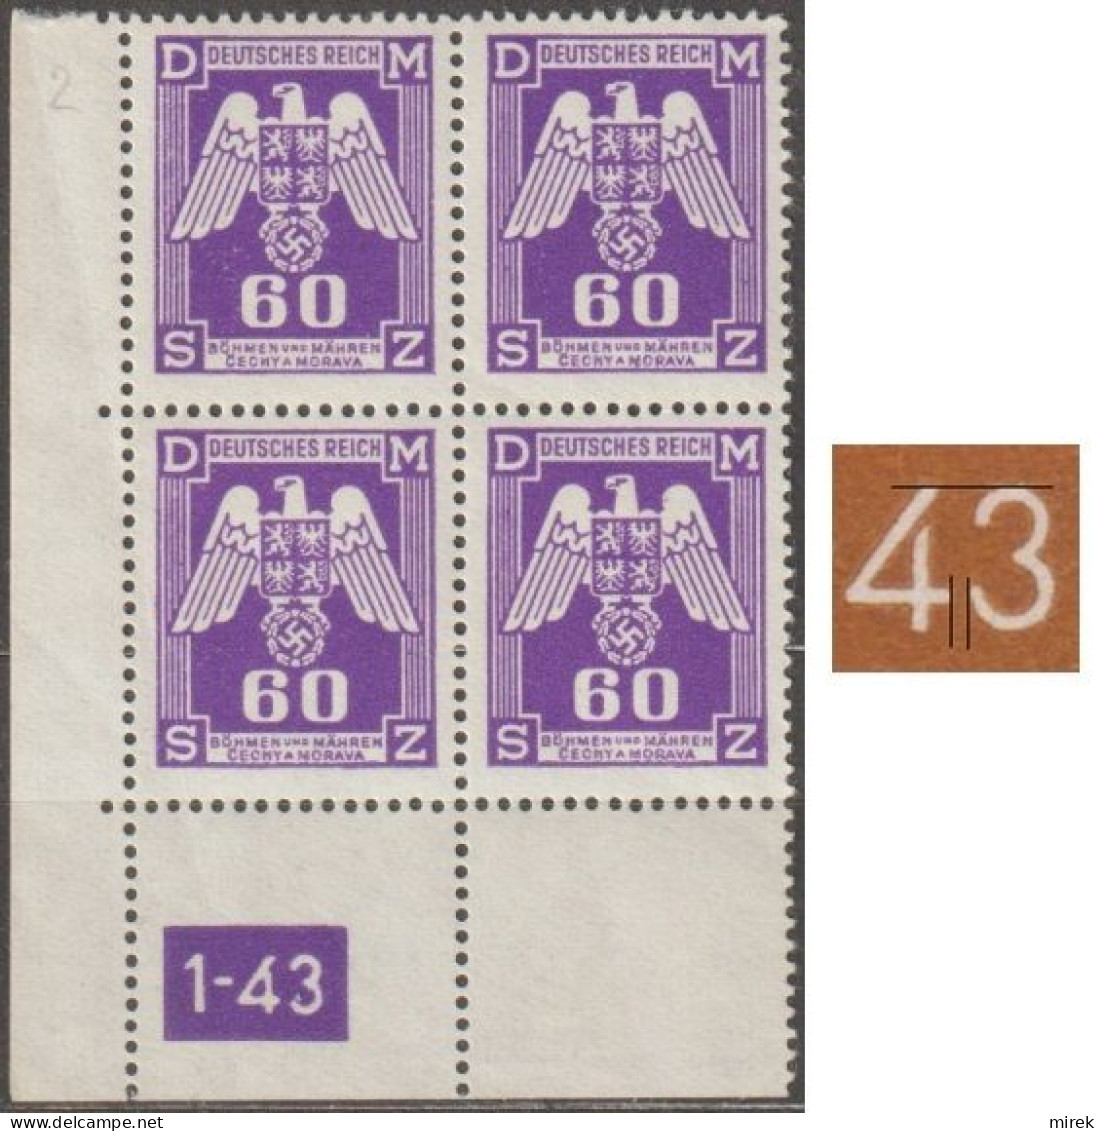 039/ Pof. SL 16, Corner 4-block, Plate Number 1-43, Type 1, Var. 2 - Unused Stamps